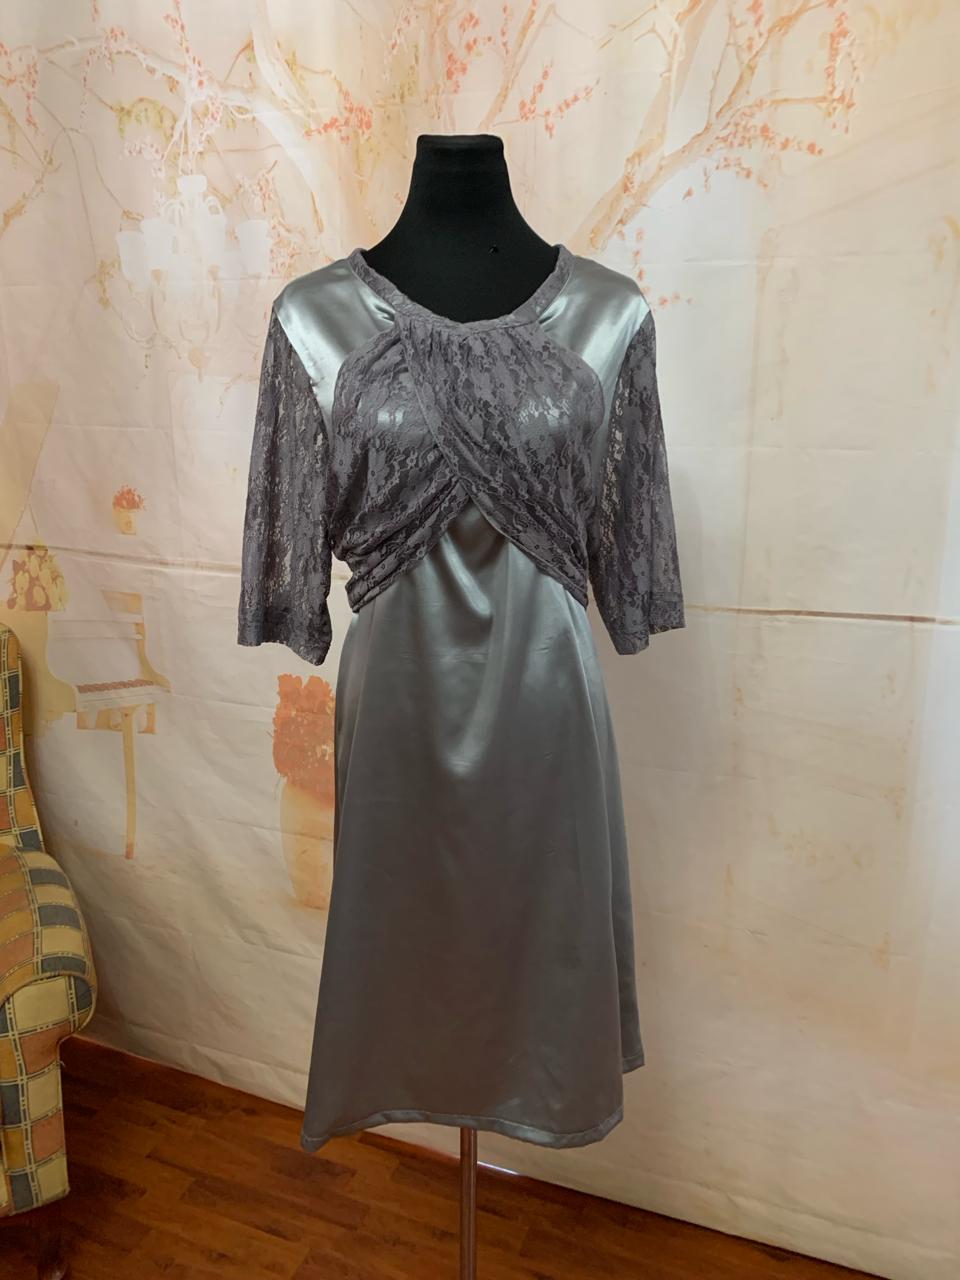 drape-detail-lace-dress-2022030000121